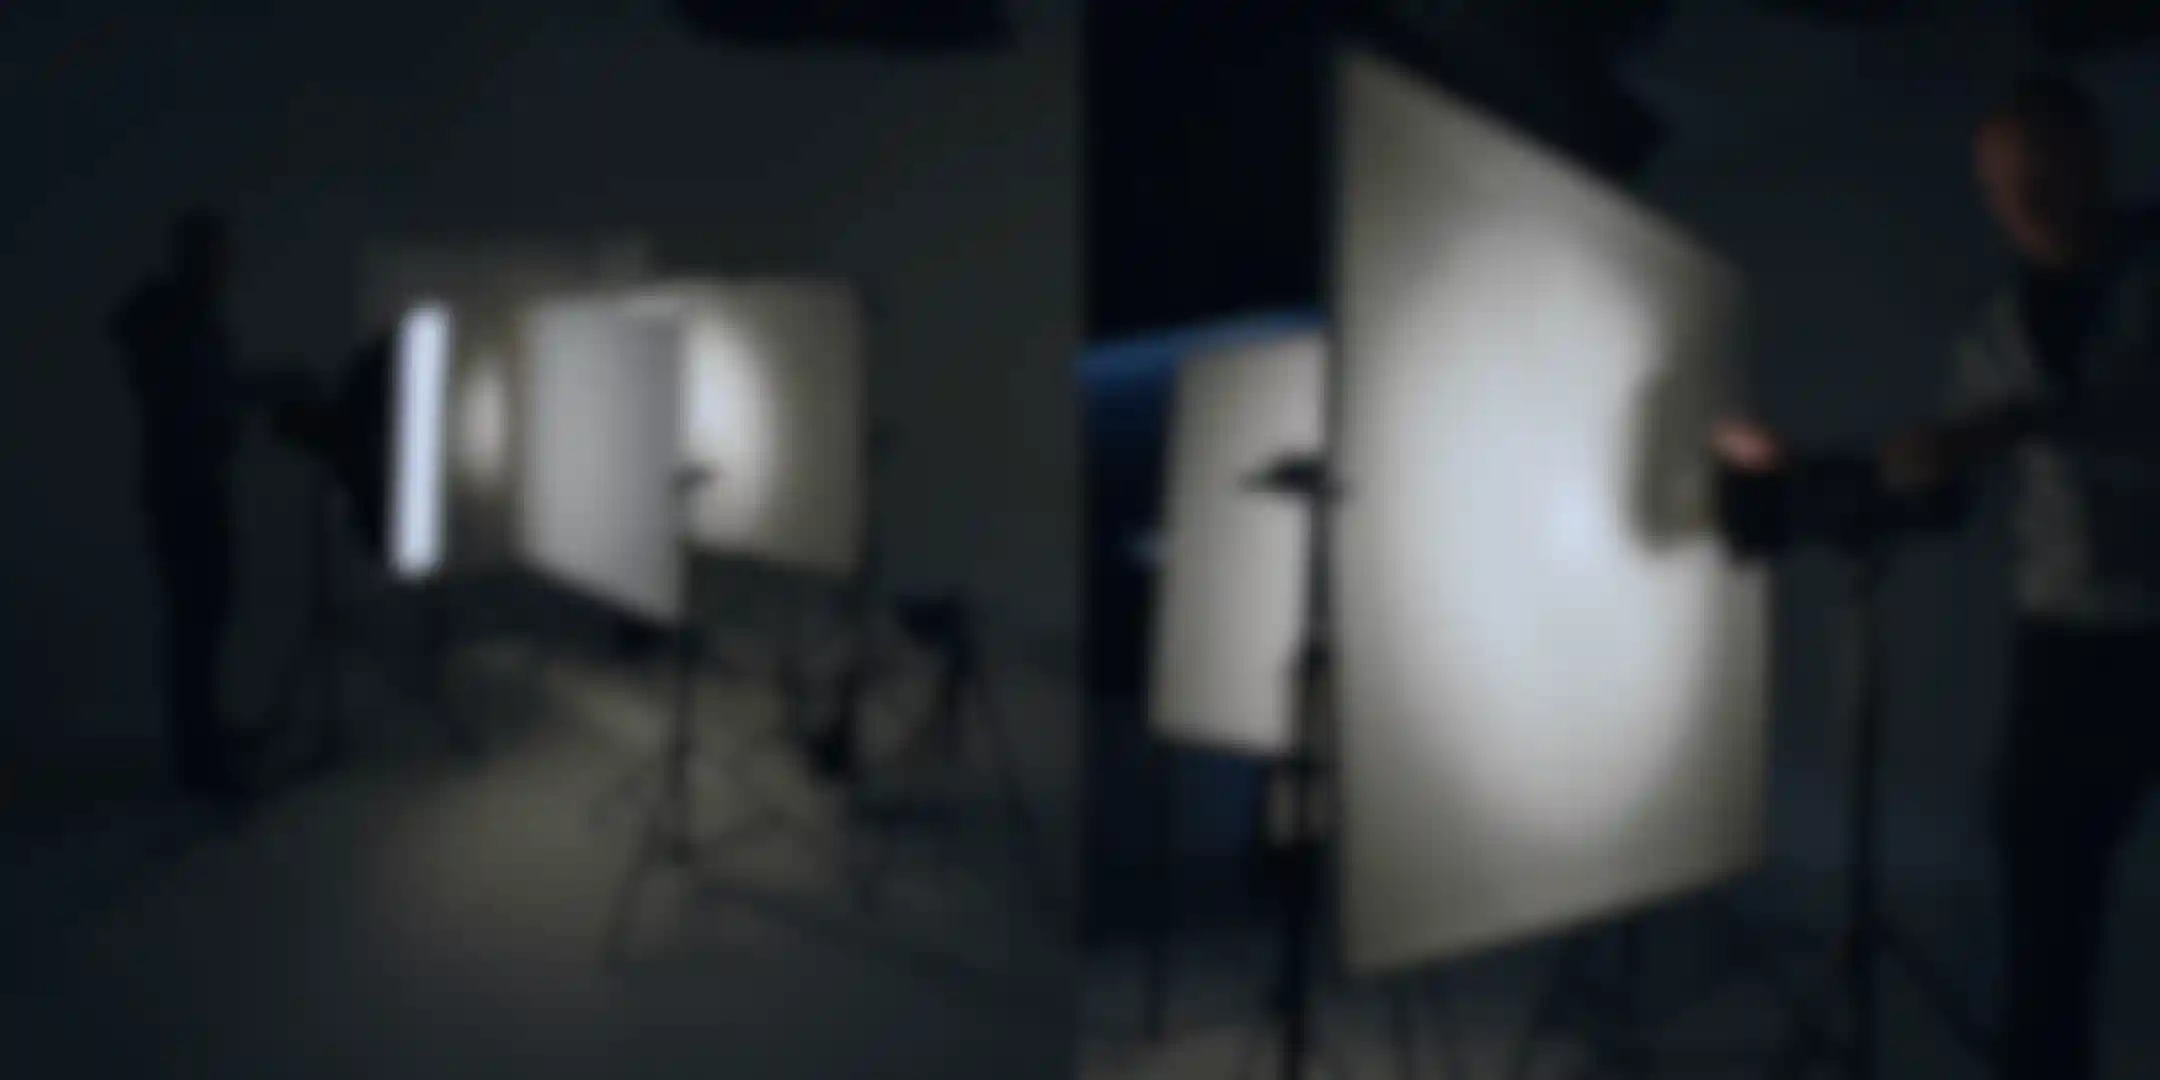 HDR Light Studio 8 brings Scrim Lights to Cinema 4D image